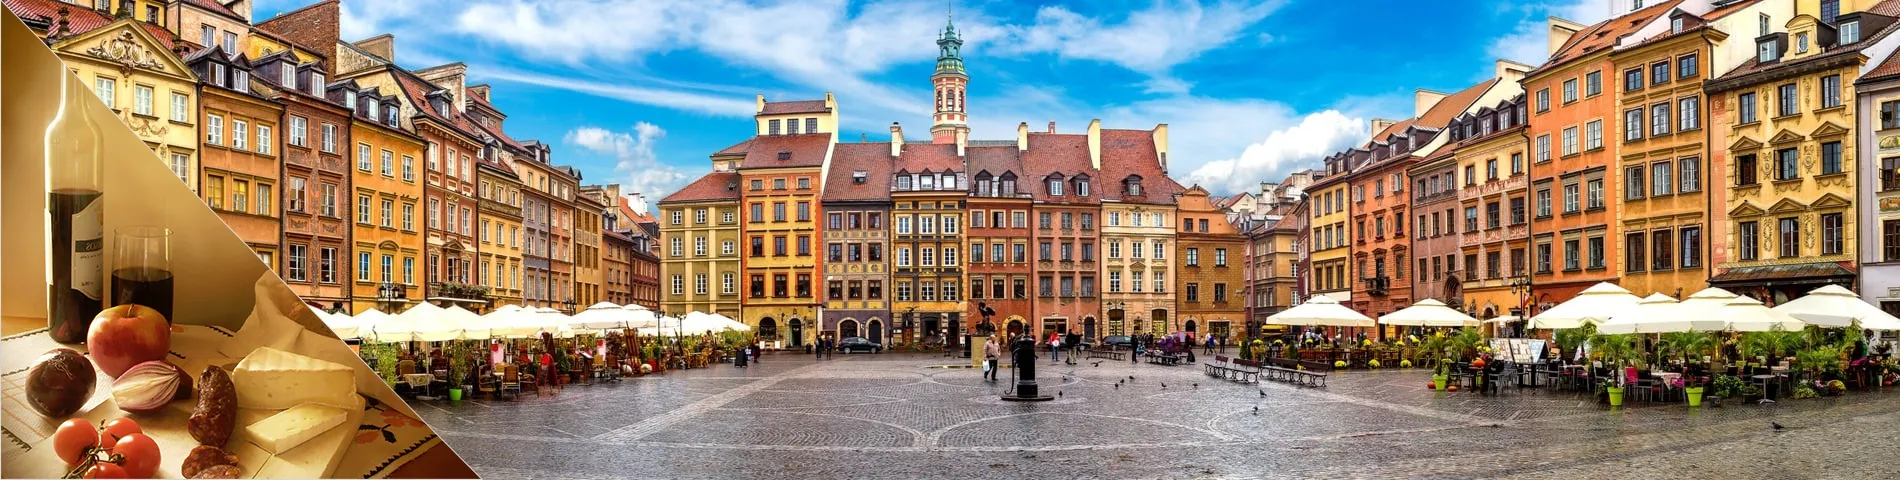 Varsovia - Polaco + Cultura